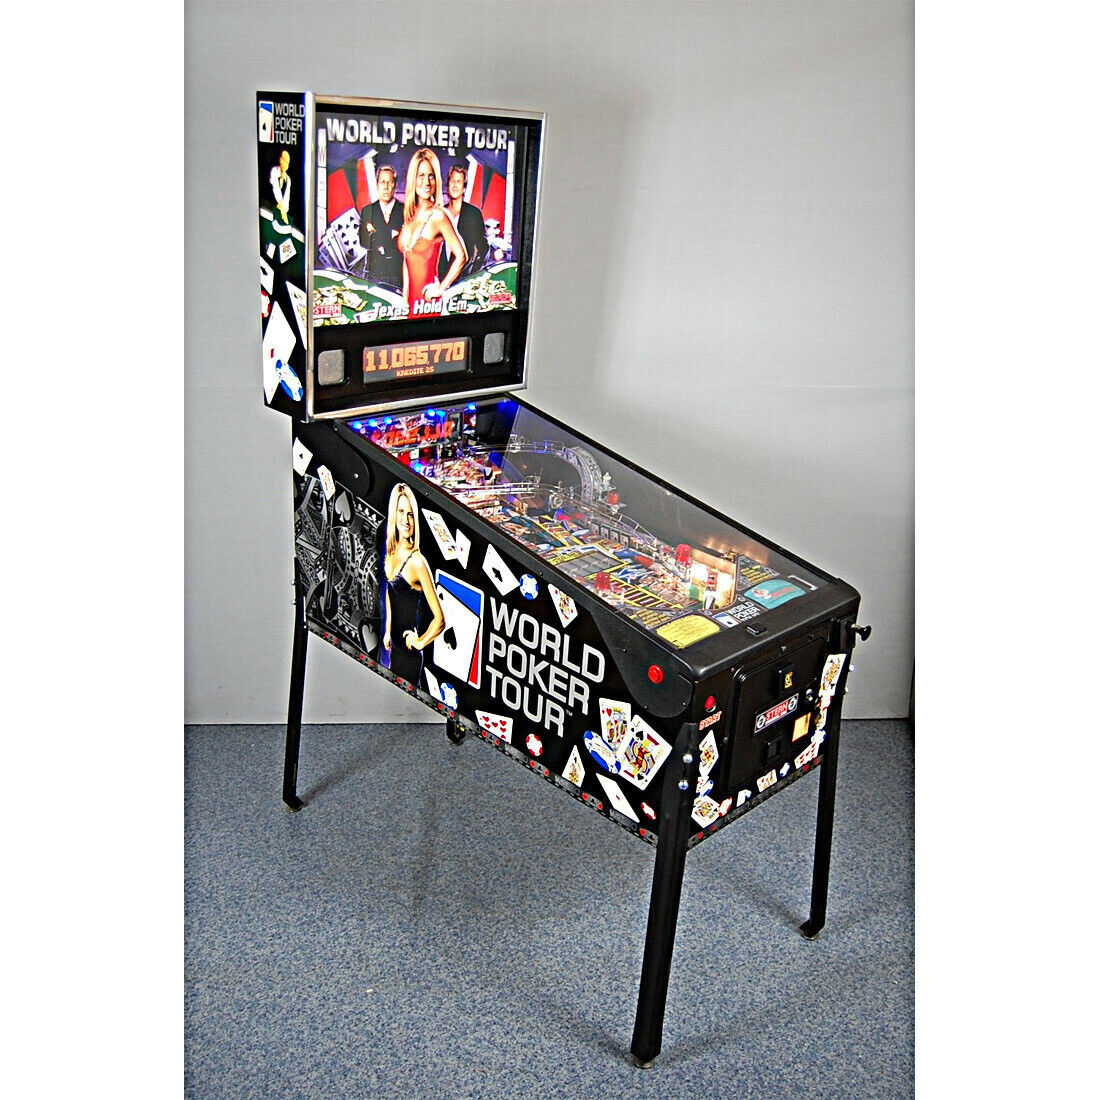 World Poker Tour Pinball Machine by Stern - Professionally Refurbished